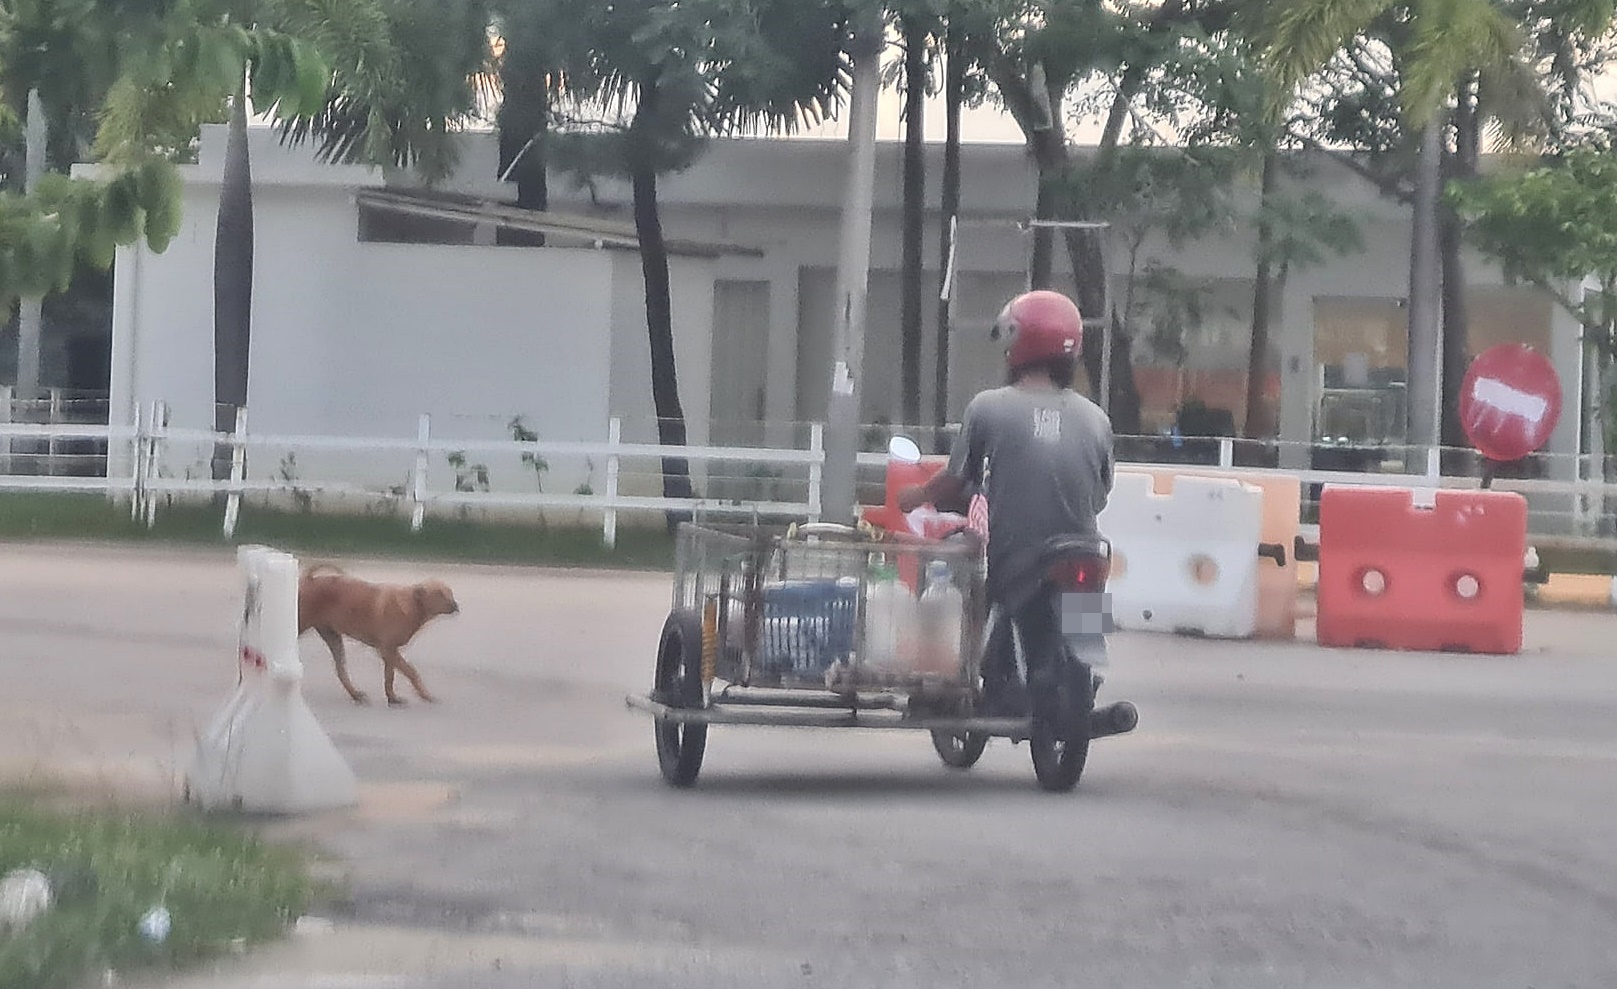 凯鲁骑著他收集回收品的摩托车，到丹江河畔给流浪狗喂食。狗狗看见凯鲁到来，便从不远处摇头摆尾的迎上前。